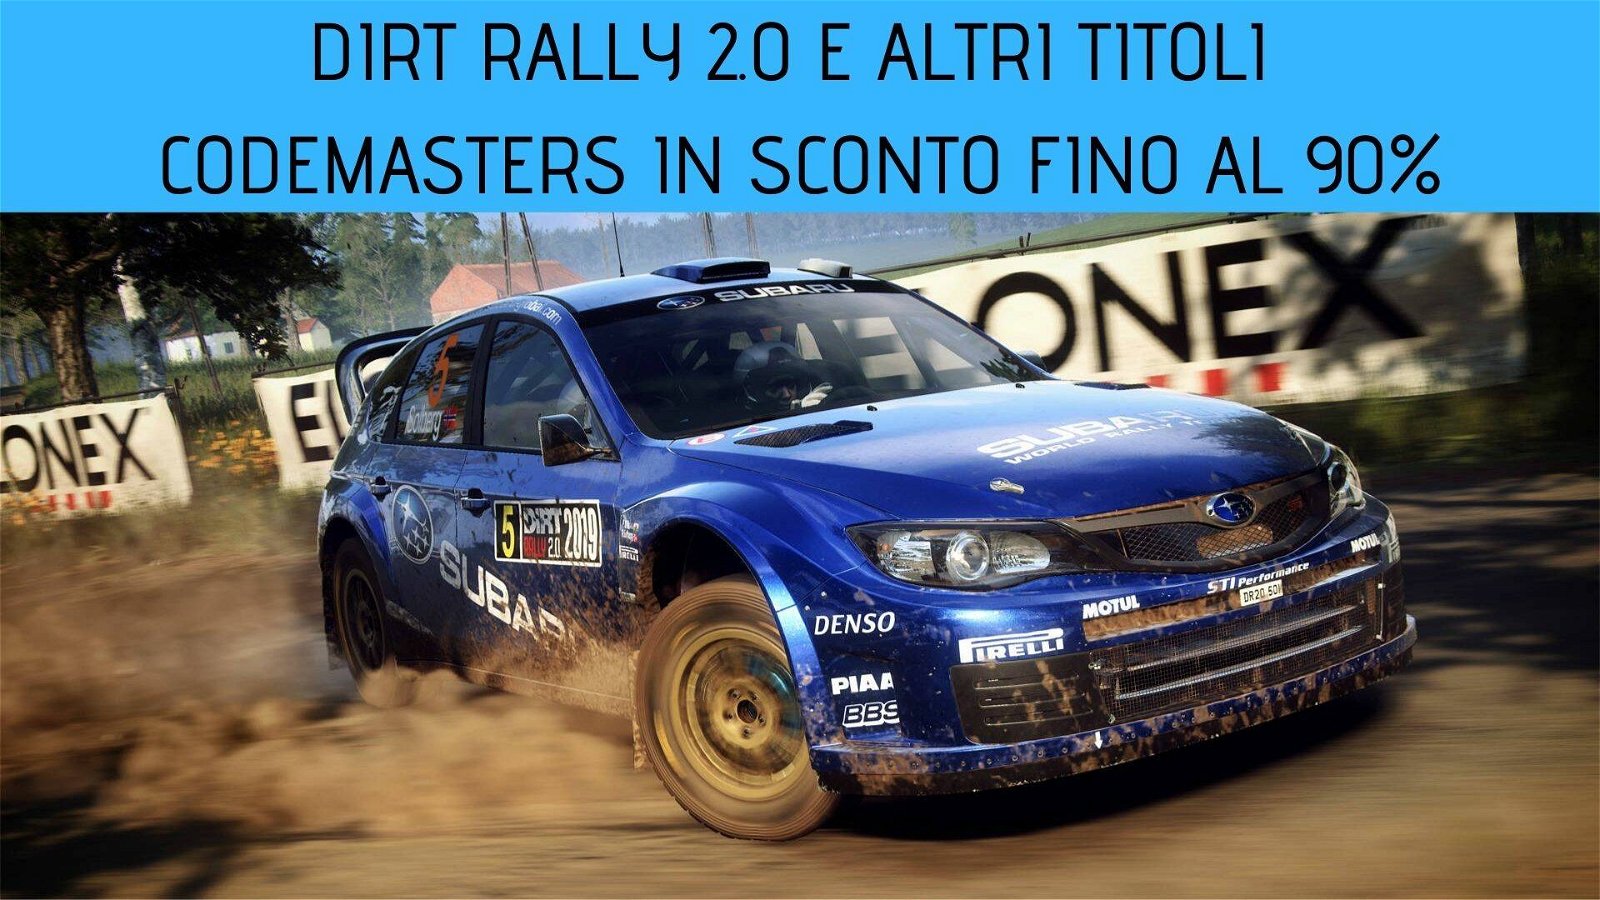 Immagine di DiRT Rally 2.0 e molti altri titoli Codemasters in sconto fino al 90% su GamersGate!